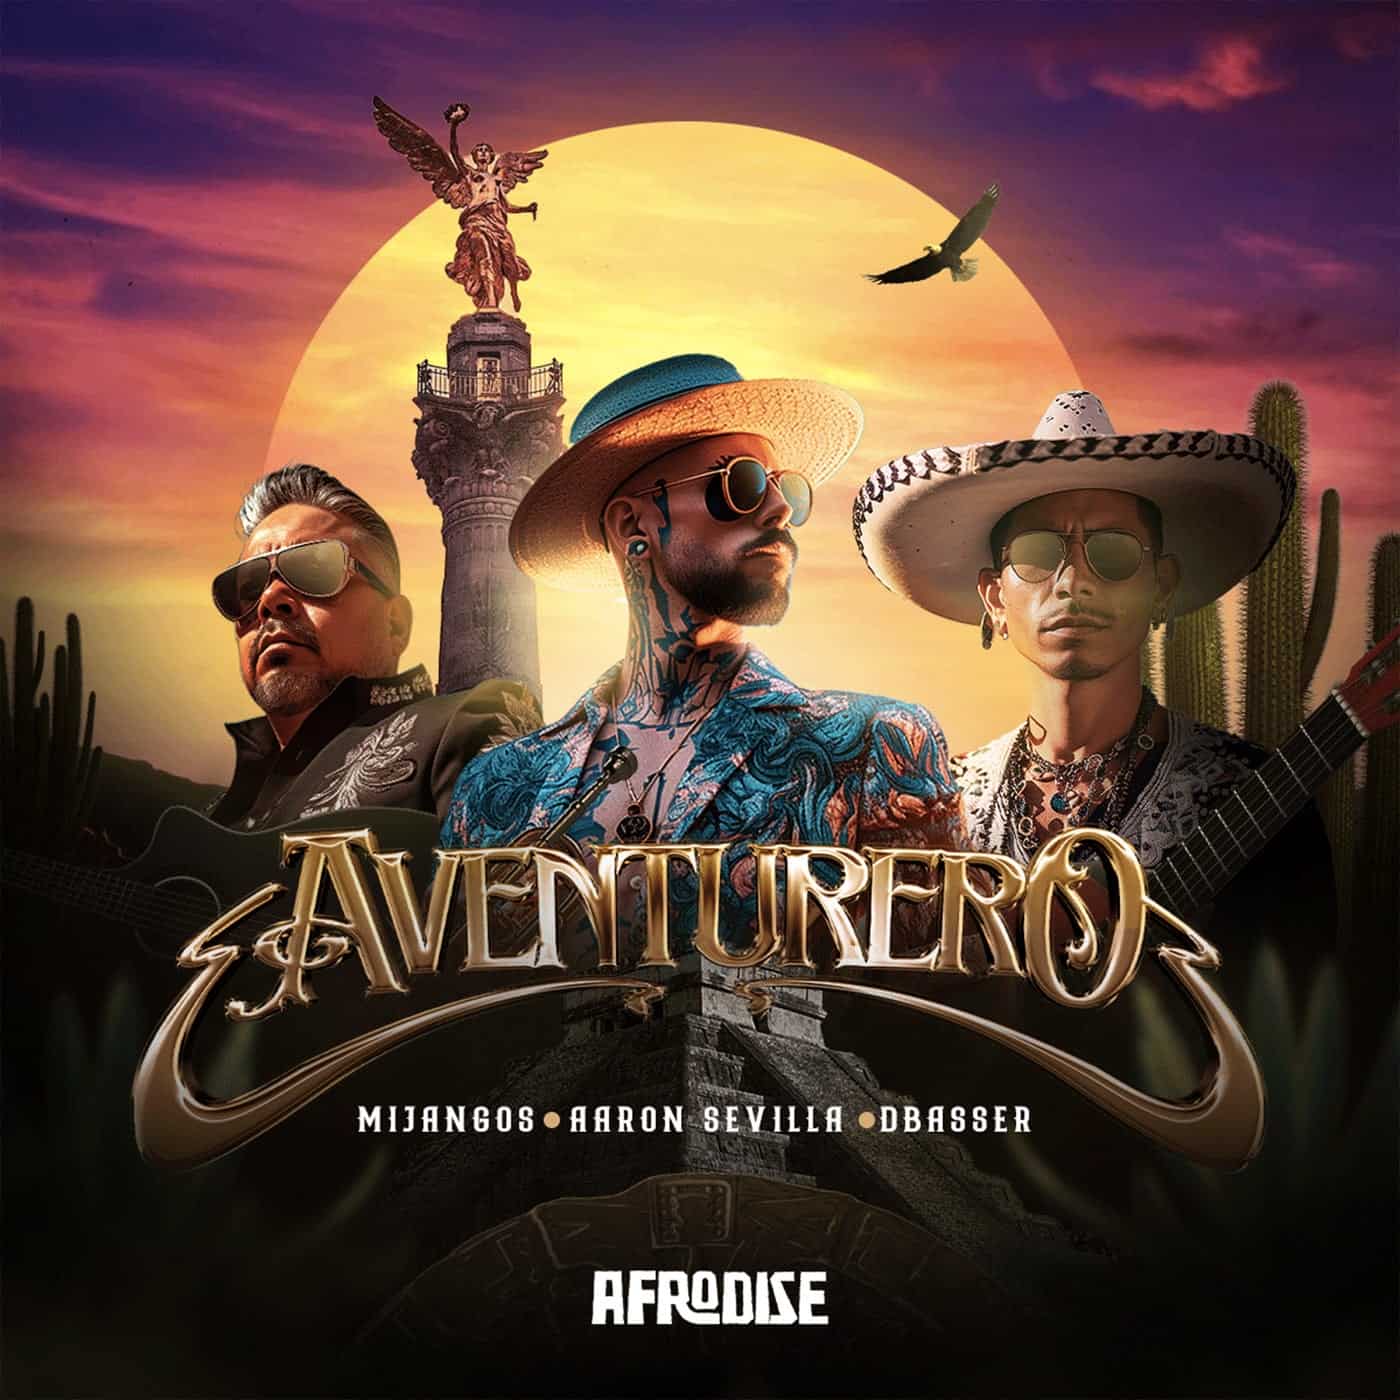 image cover: Aventurero by Mijangos, Aaron Sevilla, dbasser on AFRODISE